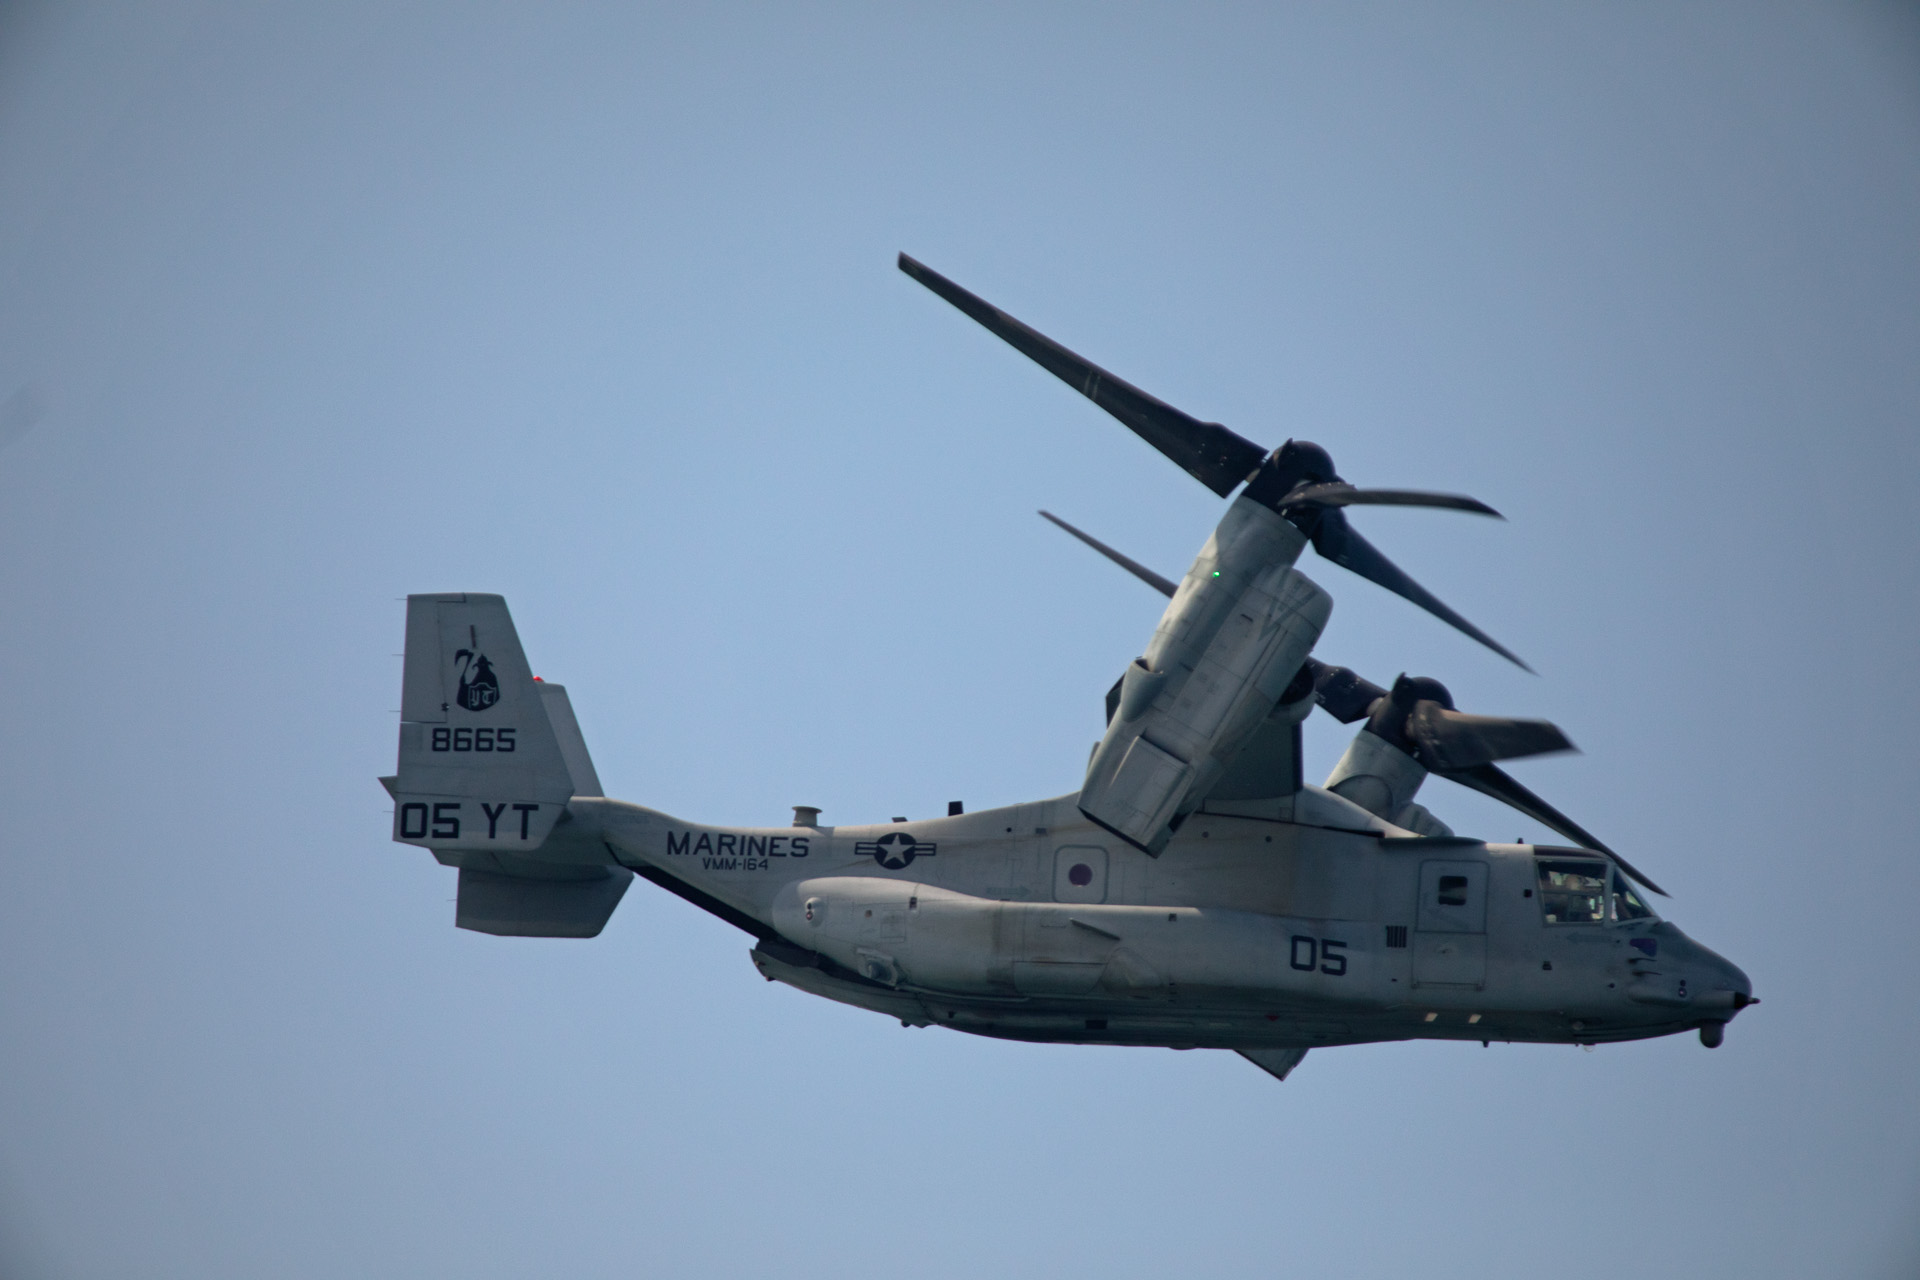 Mv-22 Osprey (Oct 2, 2021)